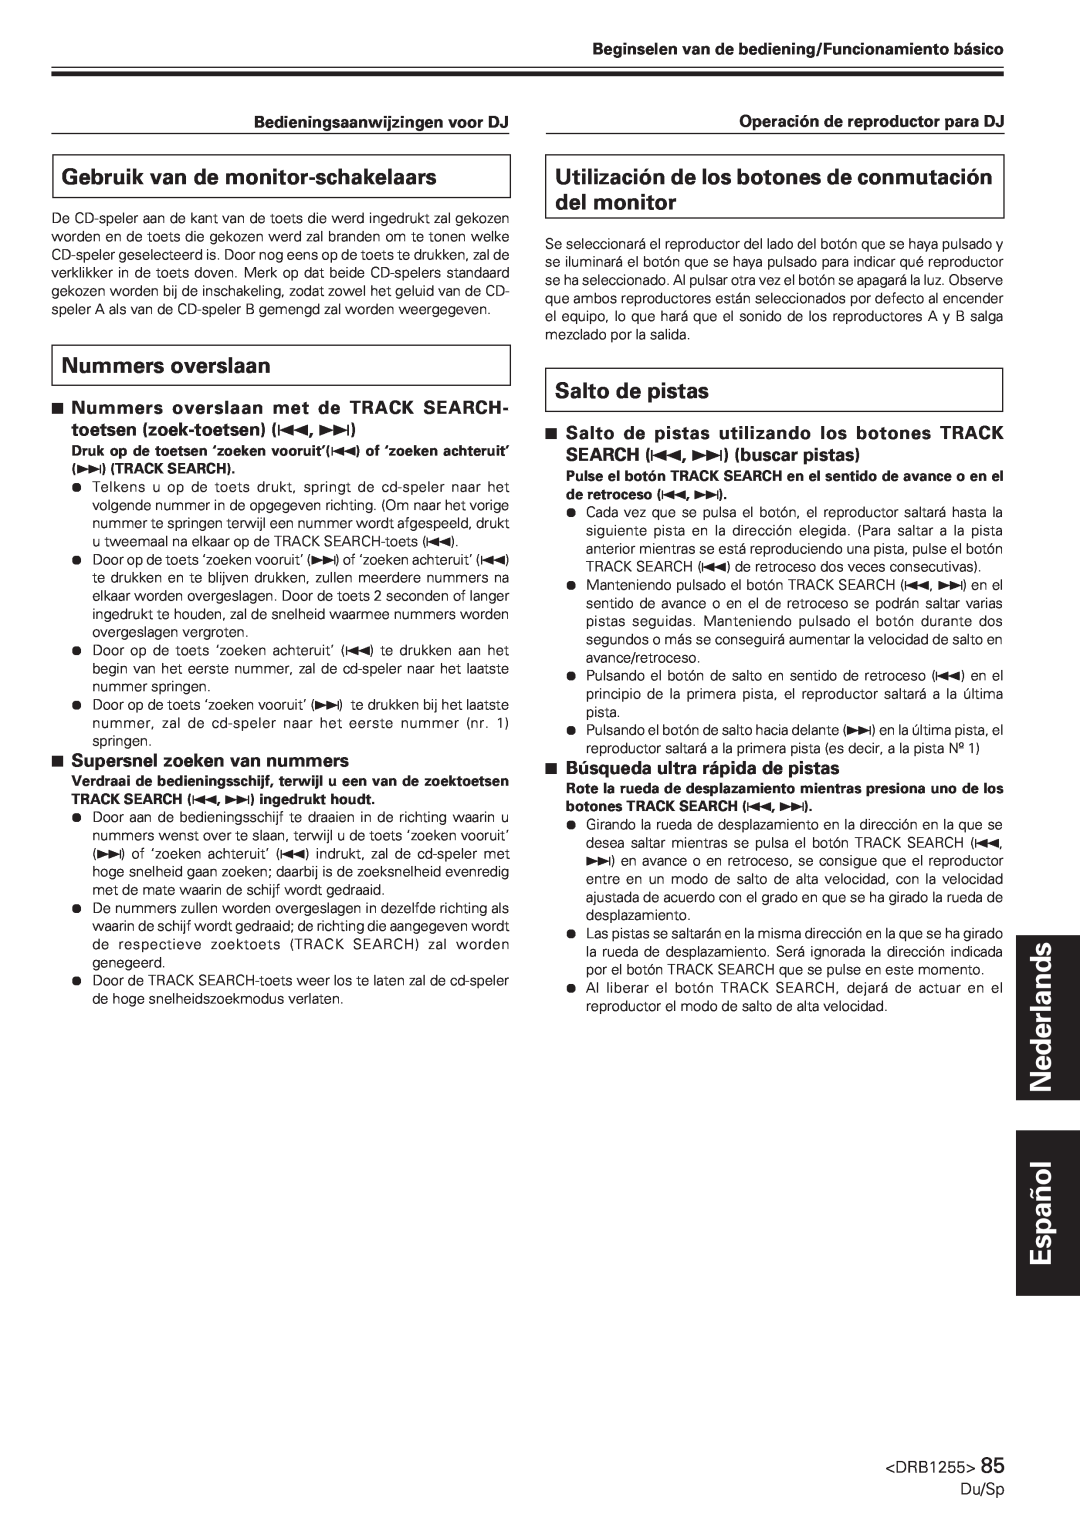 Pioneer CMX-5000 manual Gebruik van de monitor-schakelaars, Nummers overslaan, Salto de pistas, Español Nederlands 